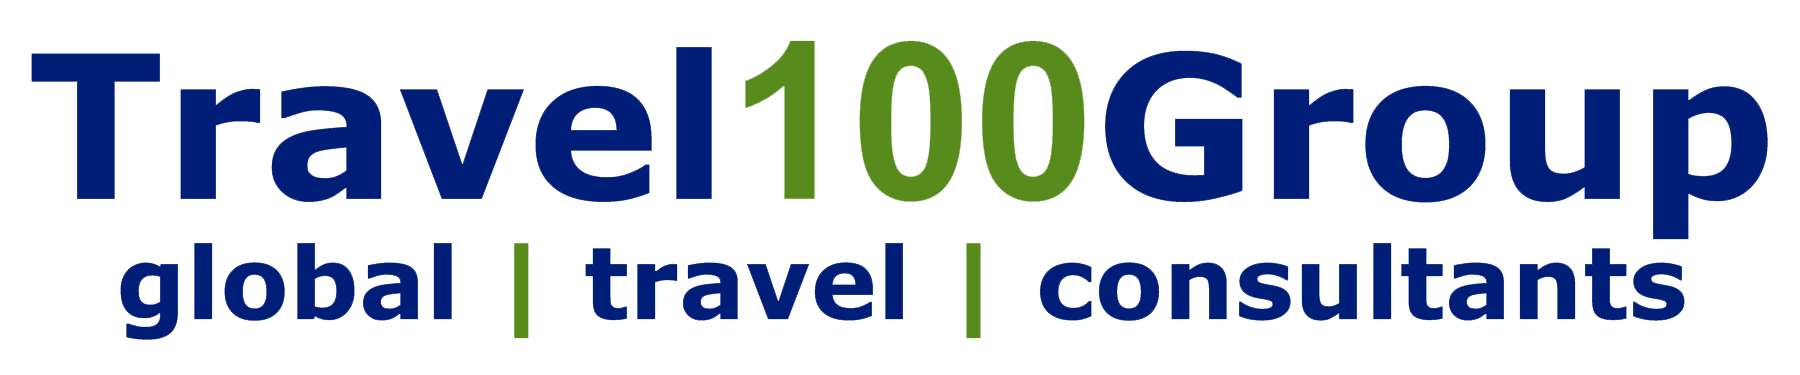 100 travel.com